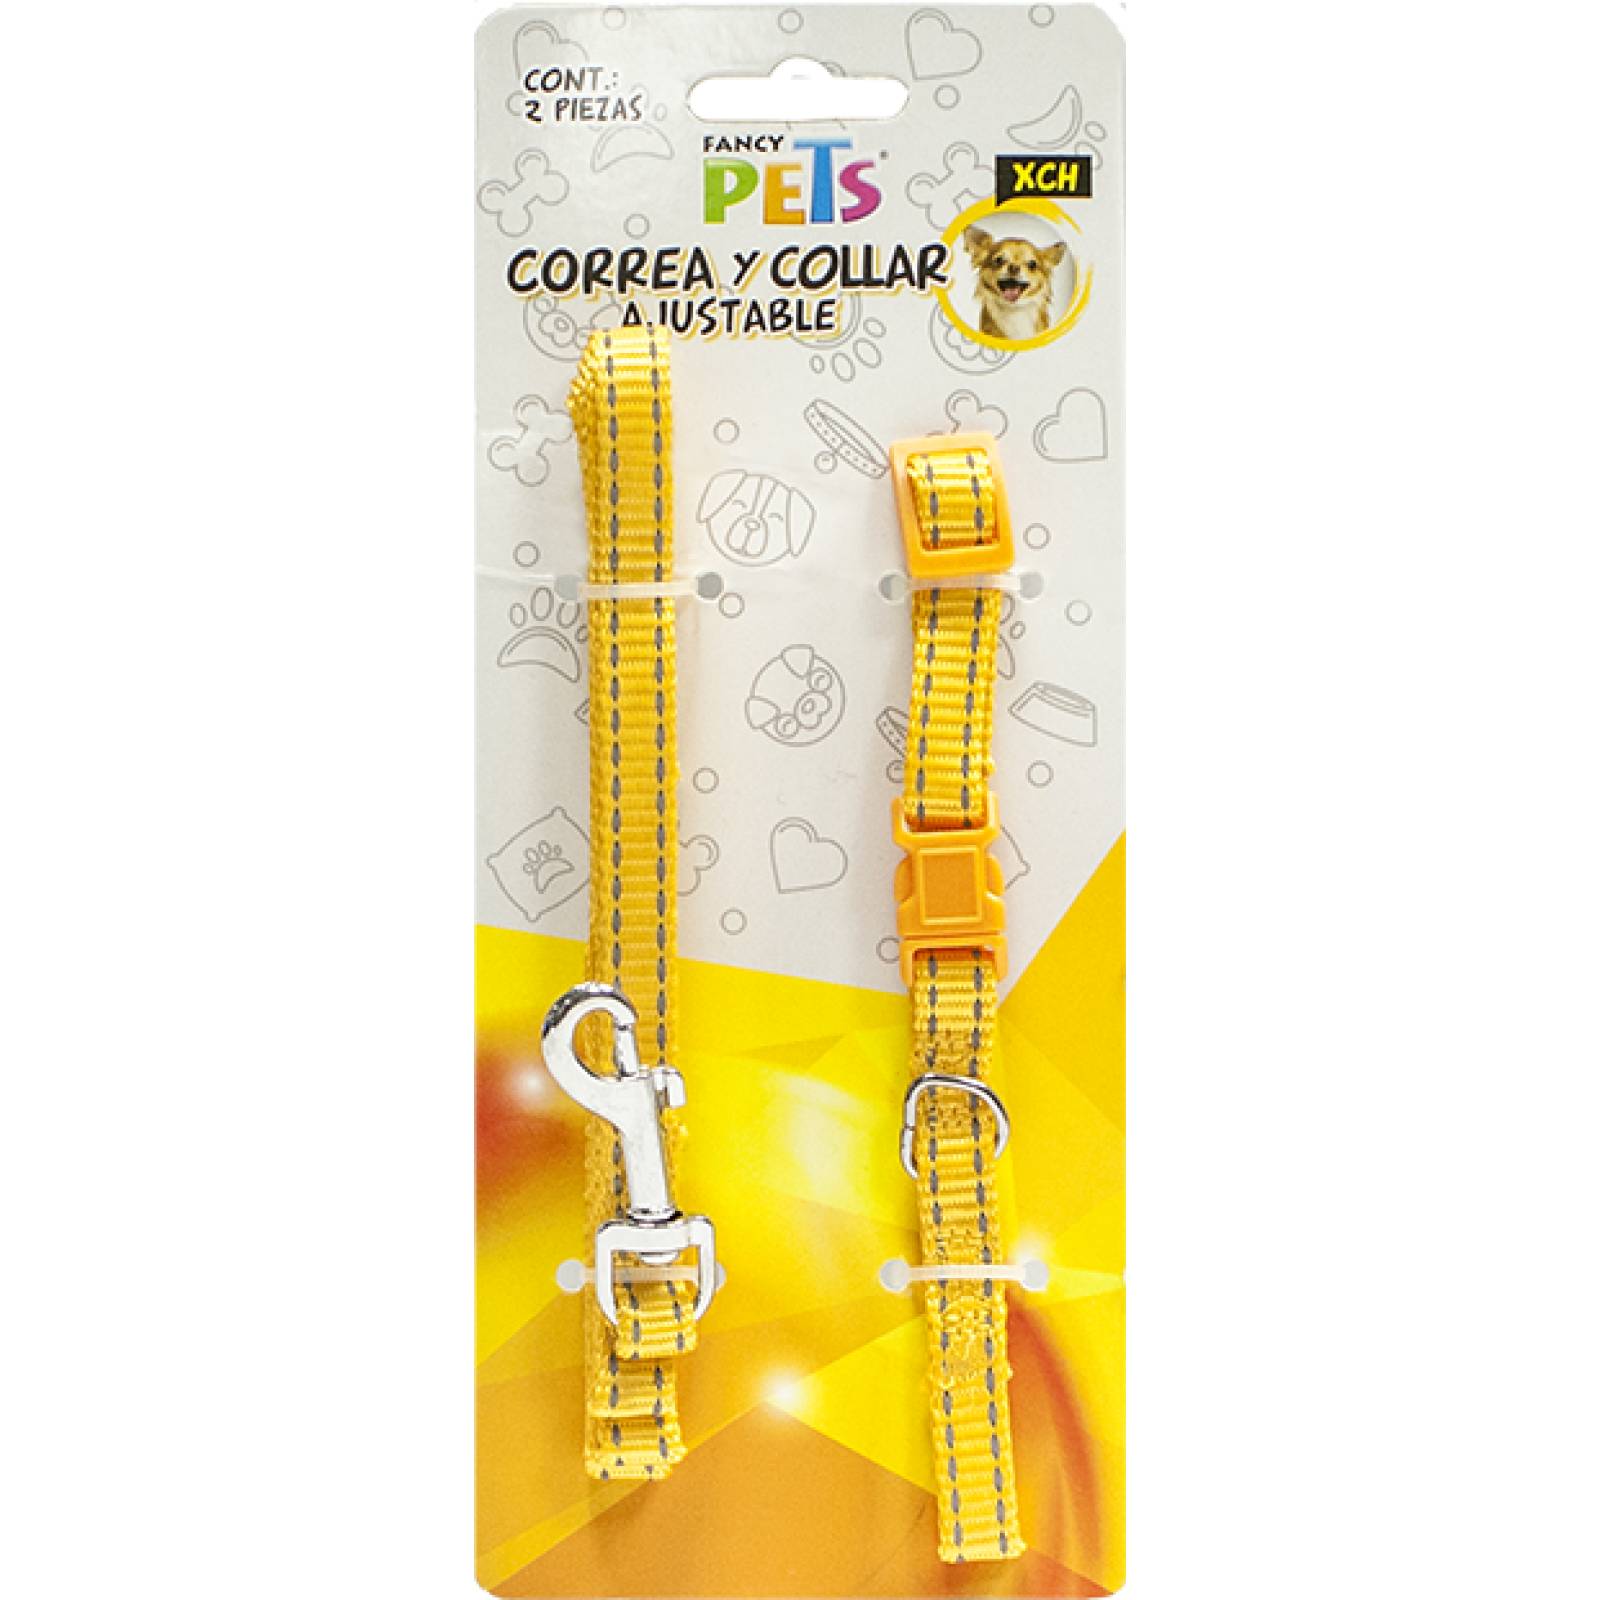 Fancy Pets Collar y Correa para Perro de Nylon ajustable con Bandas reflejantes extra-chico